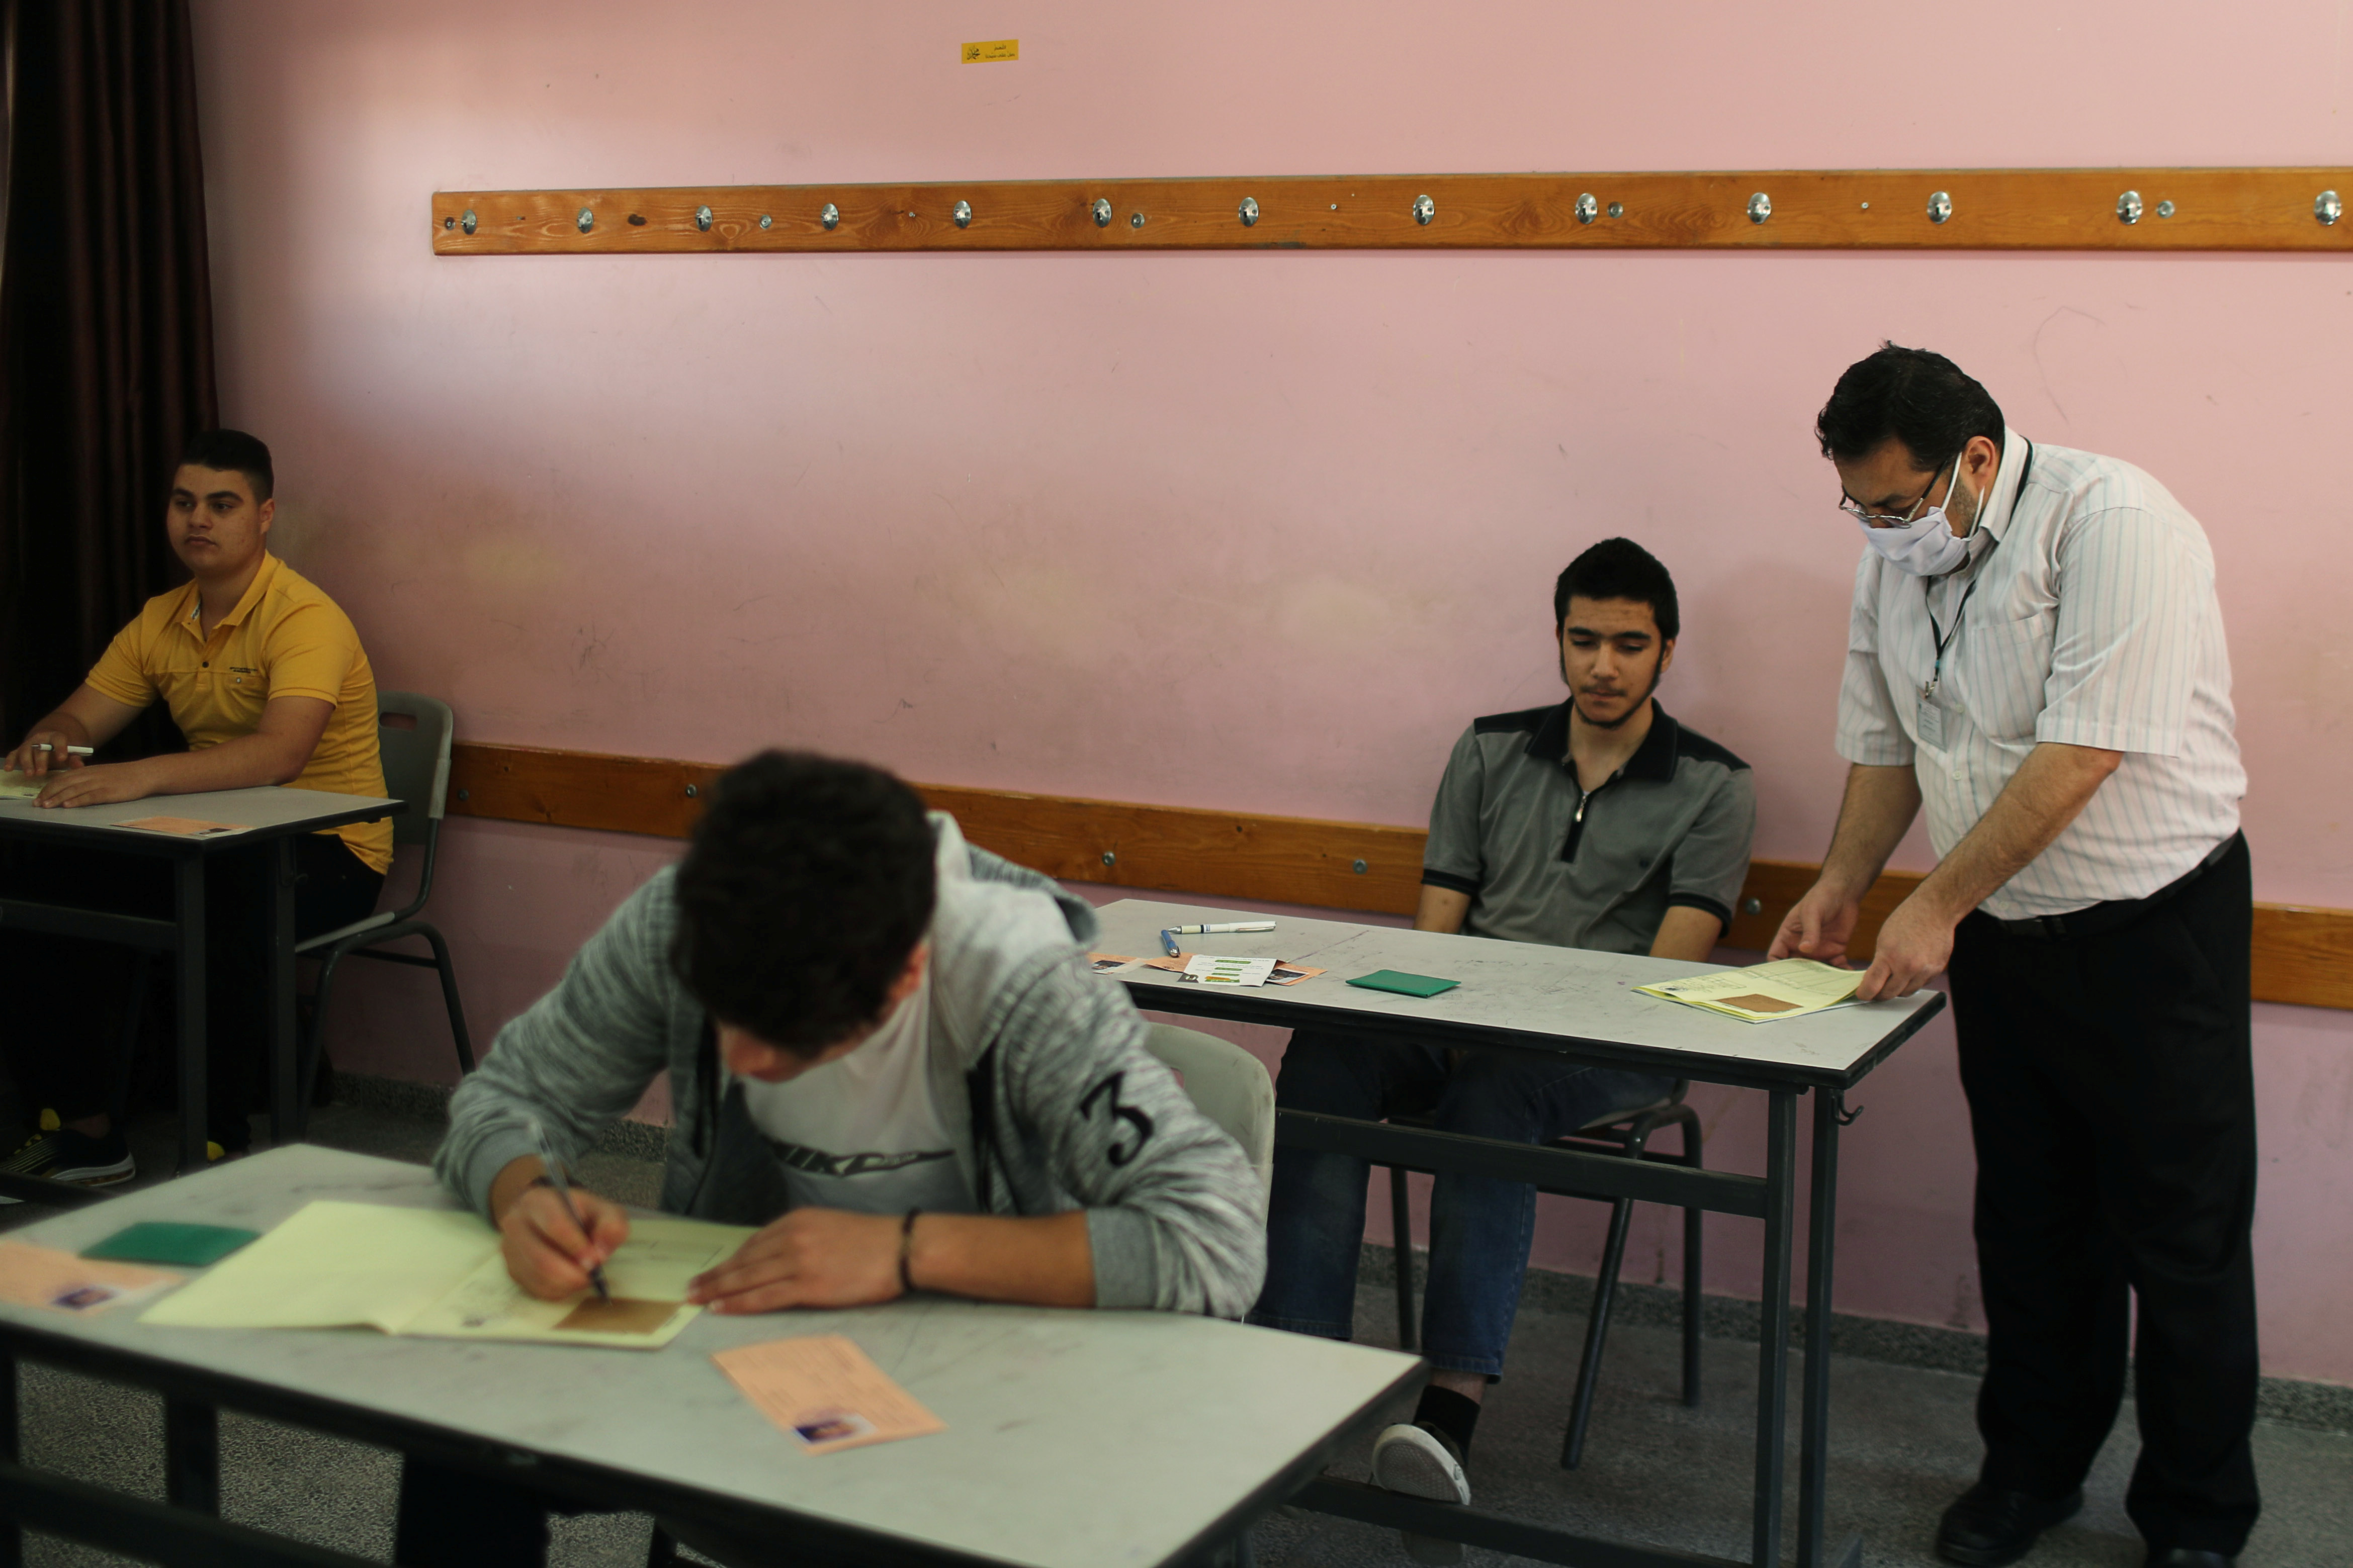 مراقب أثناء مشاهدة الطلاب الفلسطينيين امتحانات الثانوية العامة في فصل دراسي